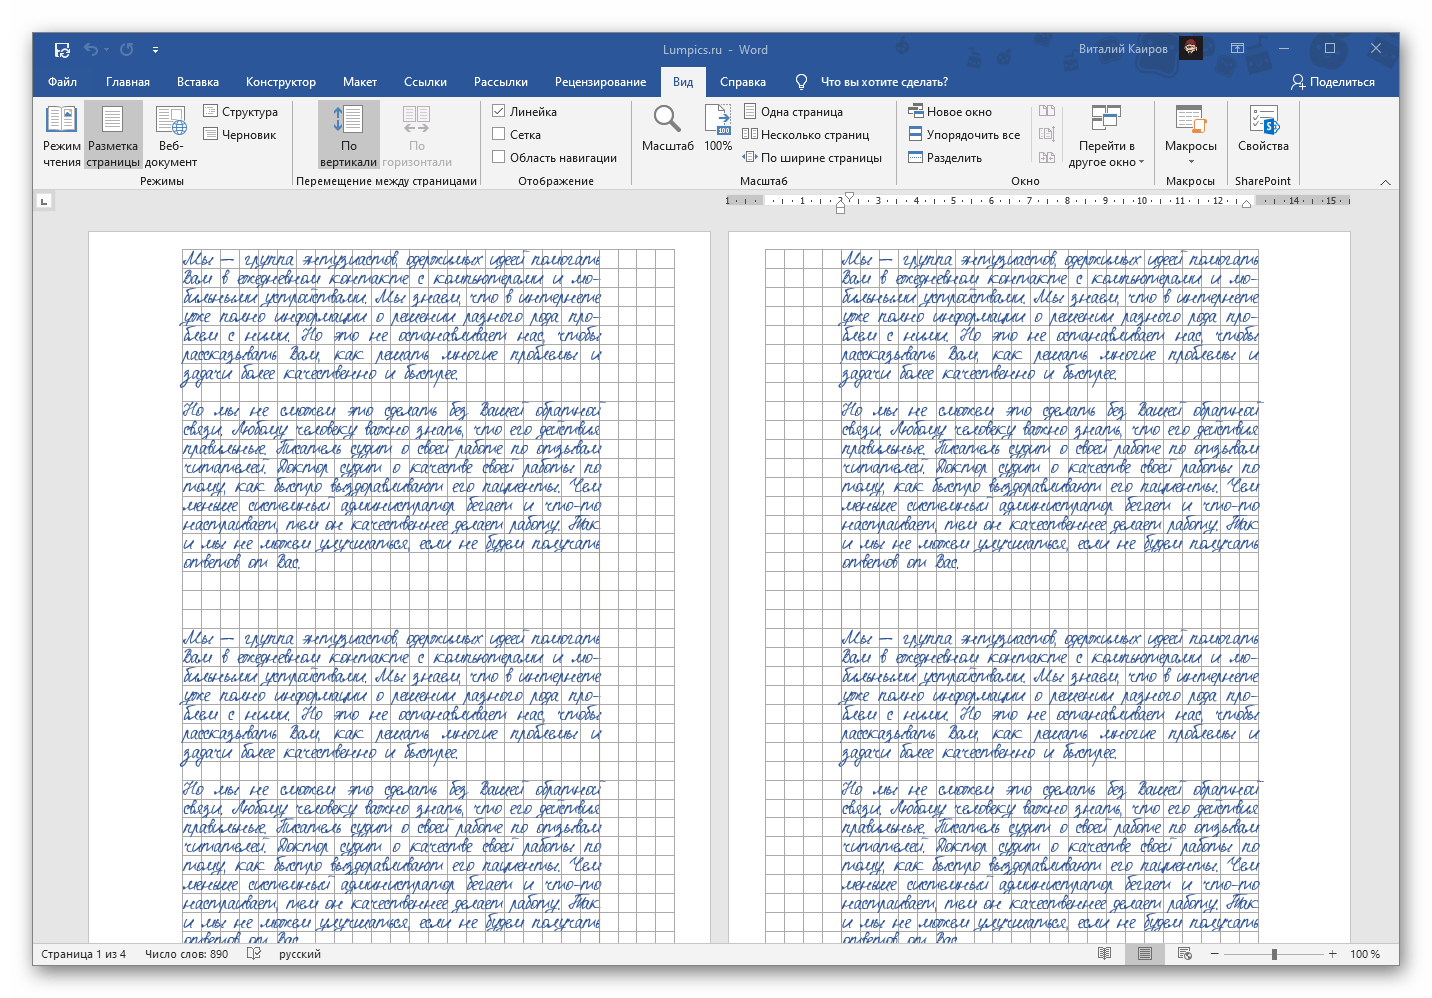 Пример конспекта с рукописным текстом, самостоятельно созданного в текстовом редакторе Microsoft Word